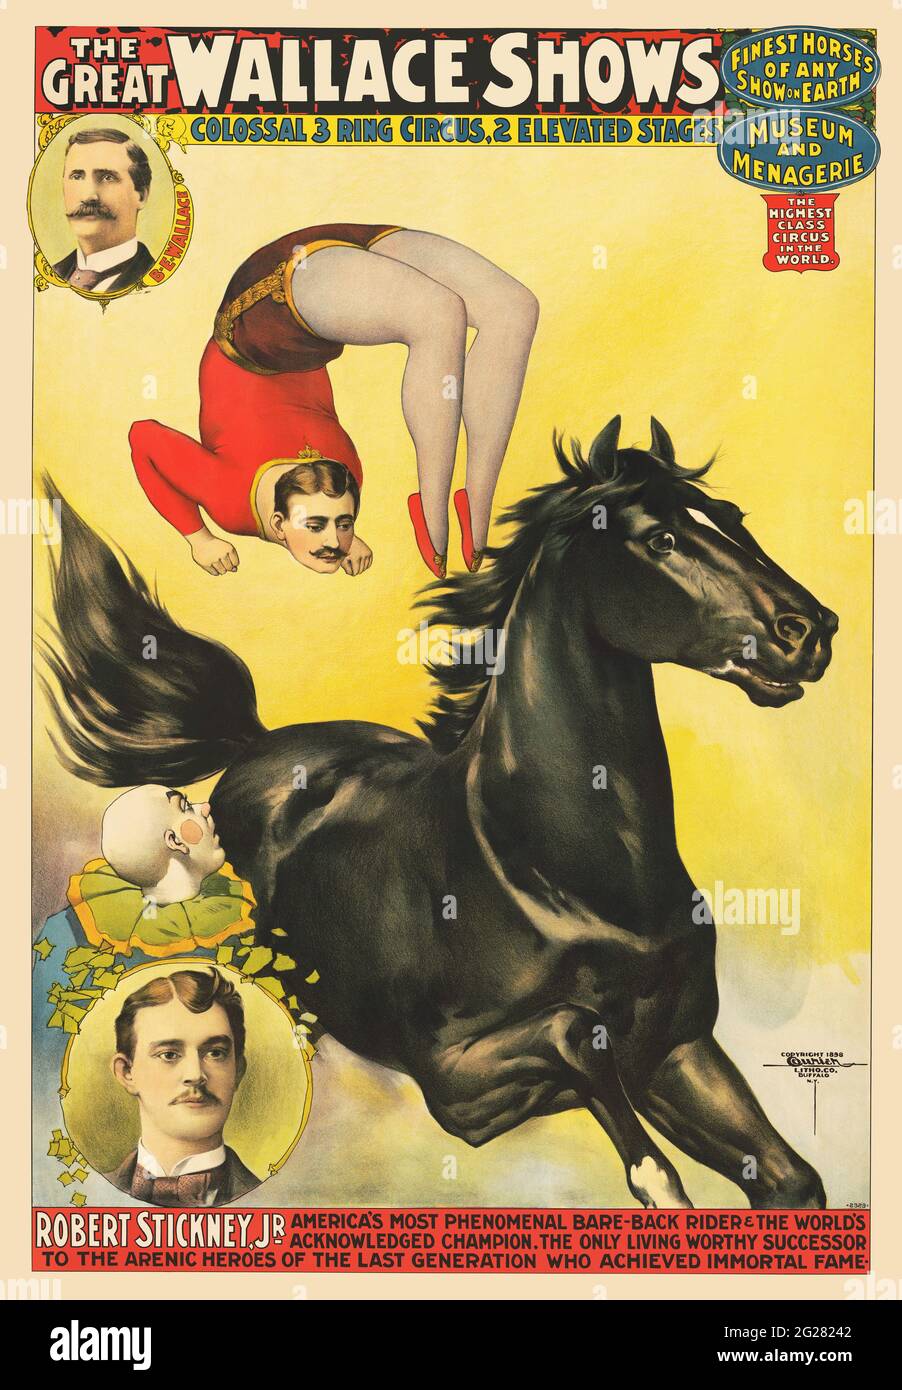 Affiche de cirque vintage pour le Great Wallace Show, montrant un acrobat exécutant un backflip sur un cheval galopant. Banque D'Images